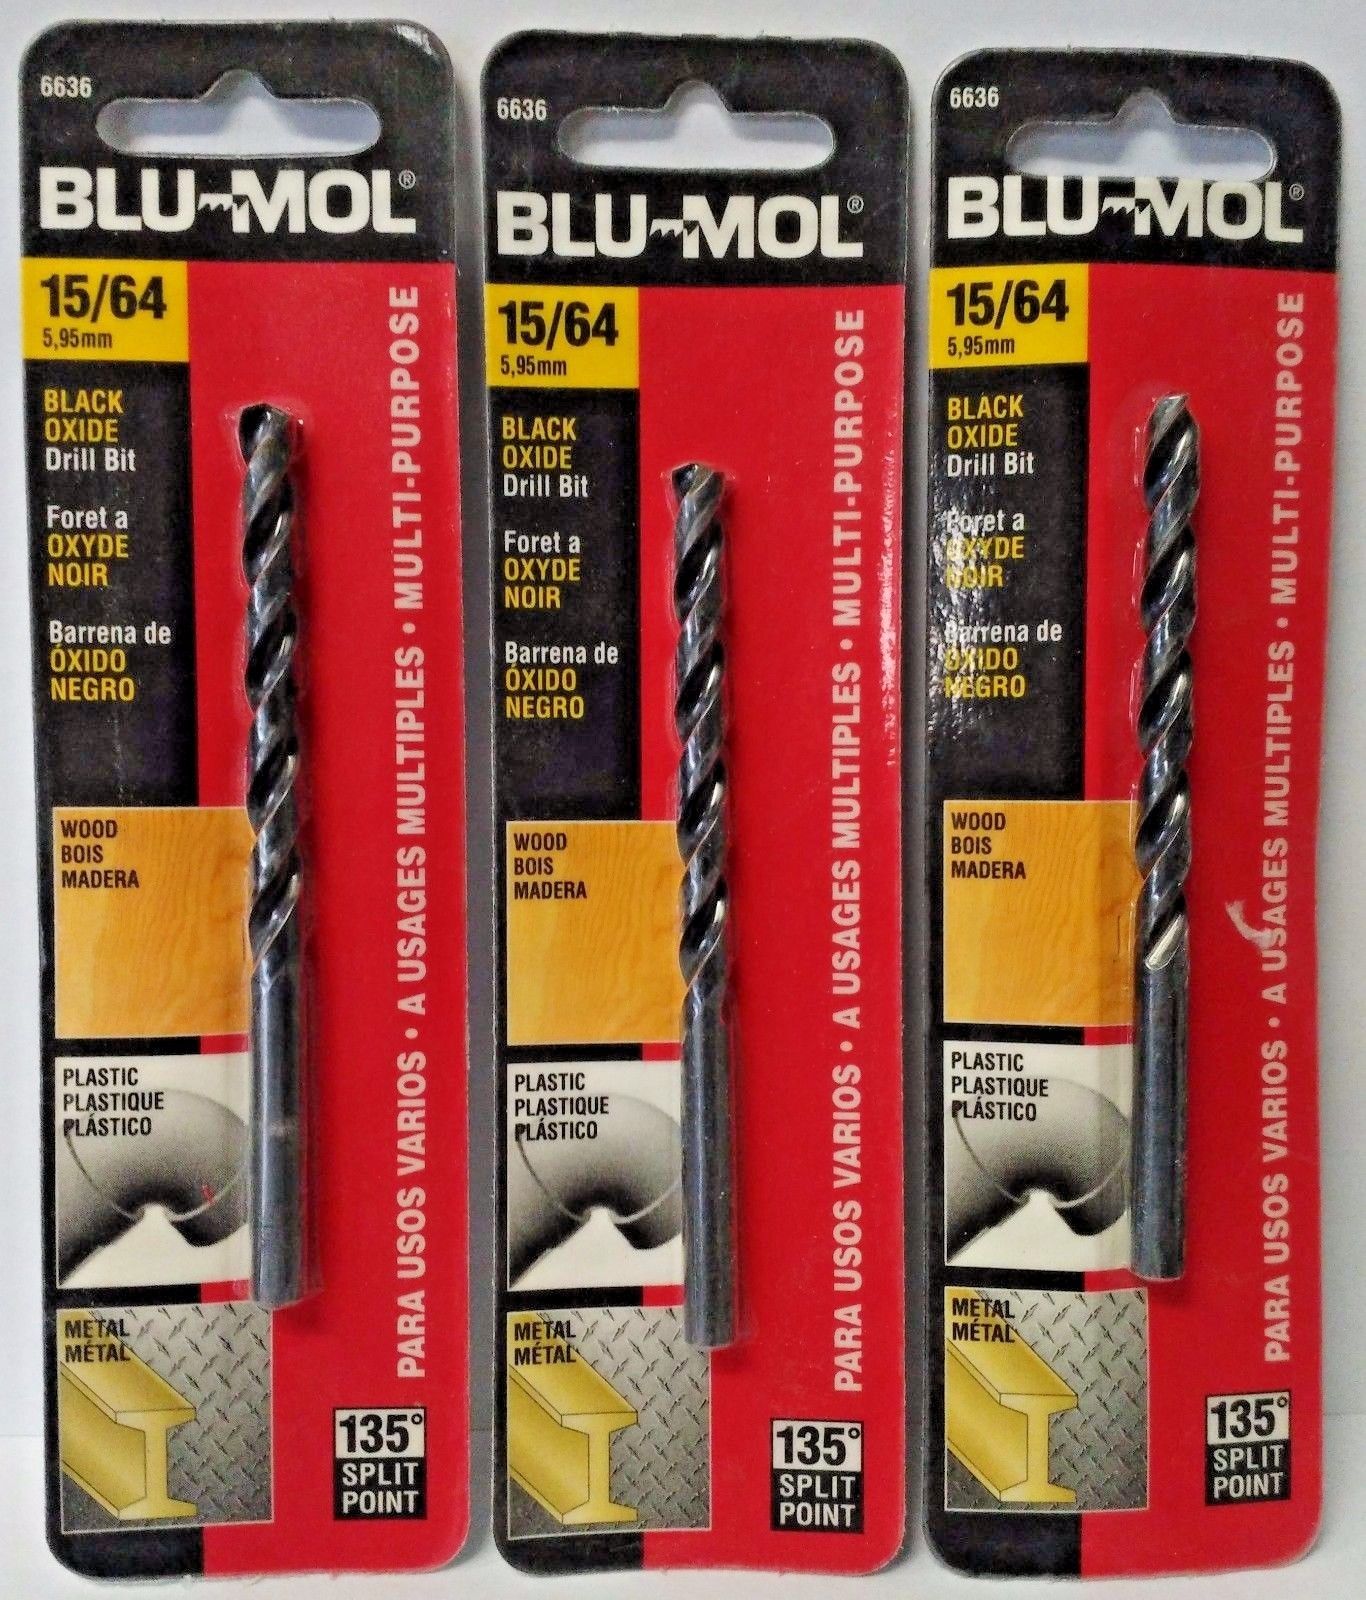 Blu-Mol 15/64" Black Oxide High Speed Drill Bit 6636 3PKS